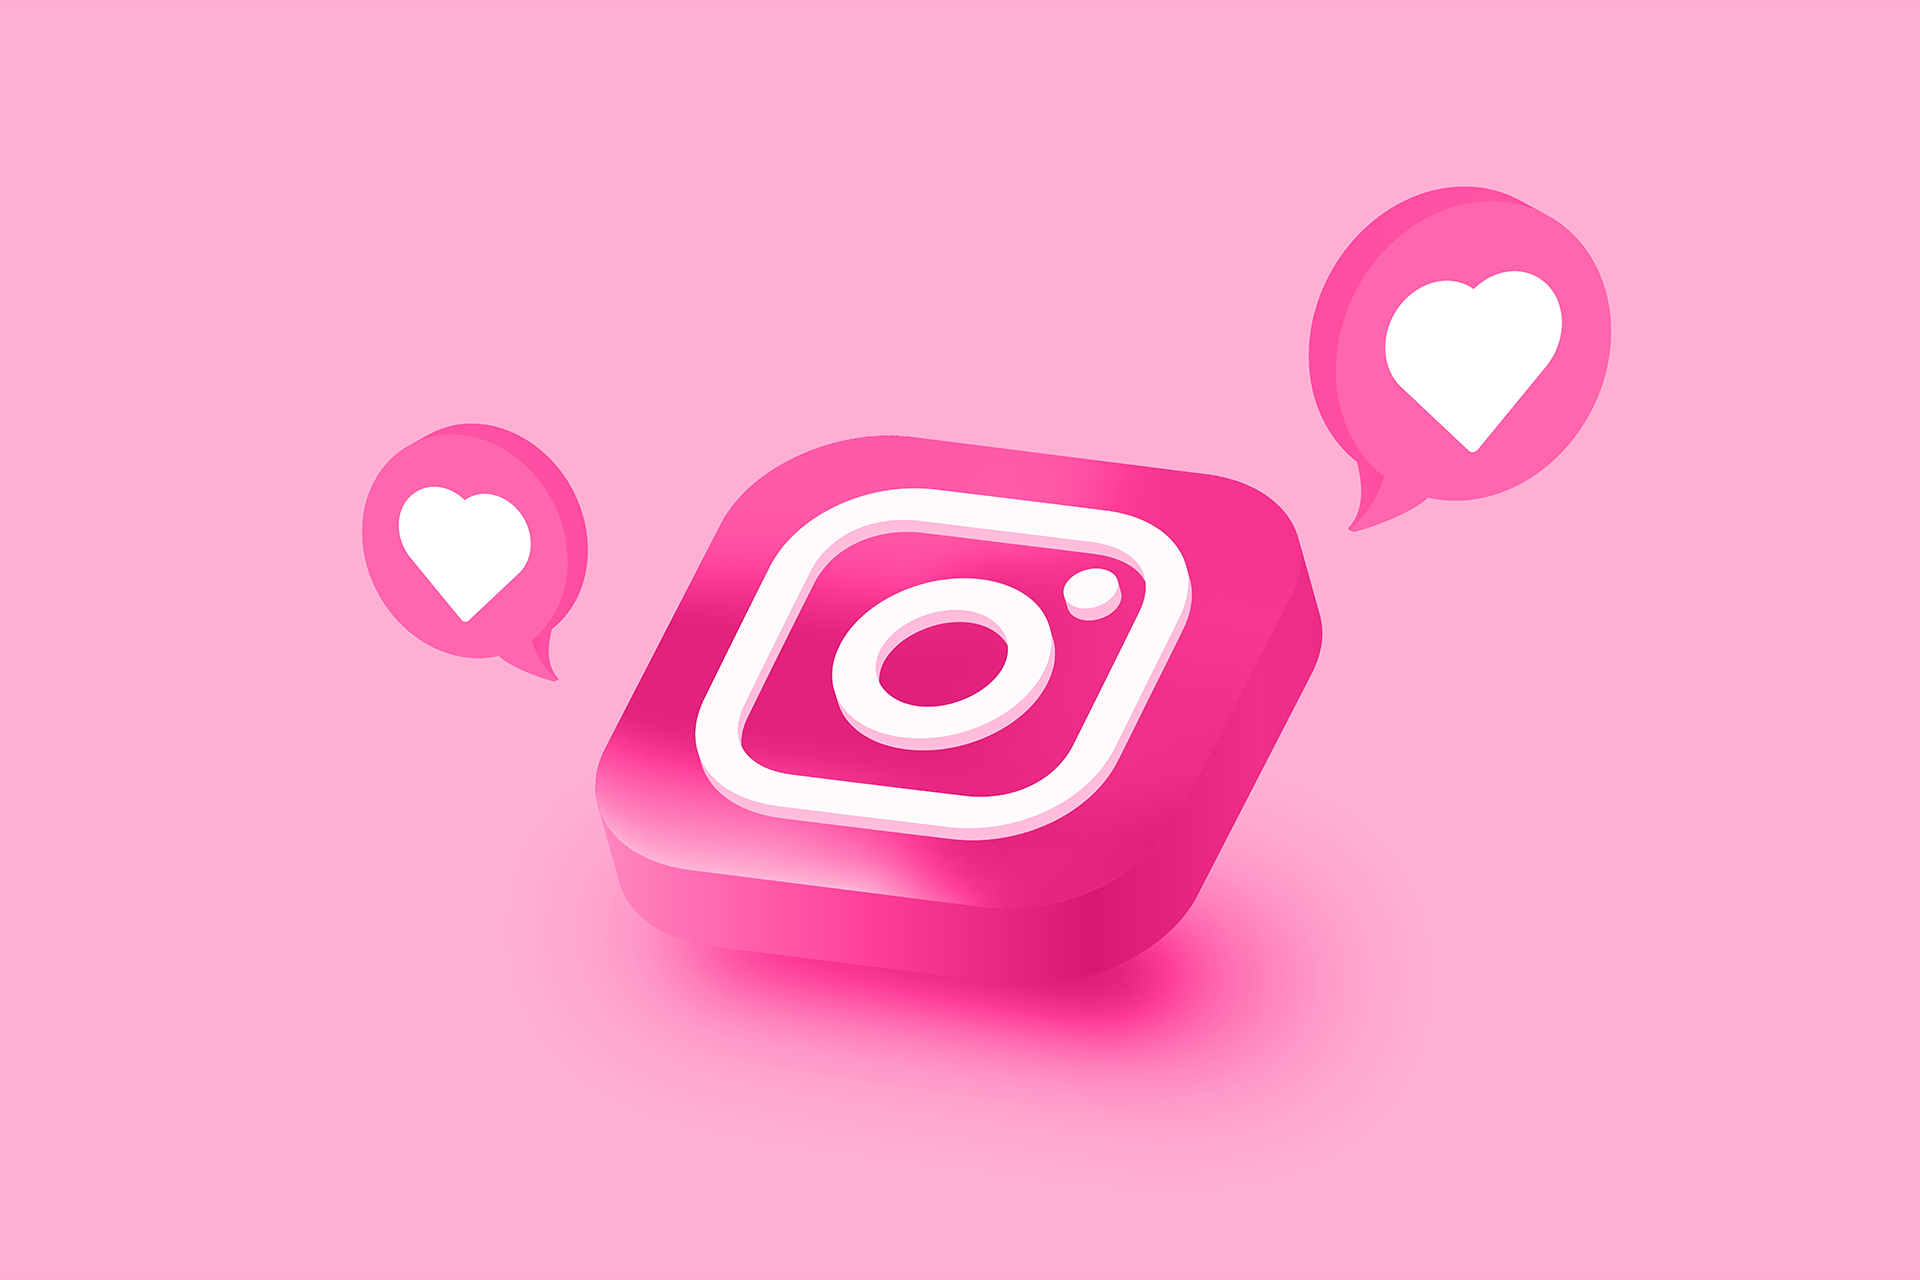 Logo Instagram rose sur fond rose avec des coeurs blancs autour